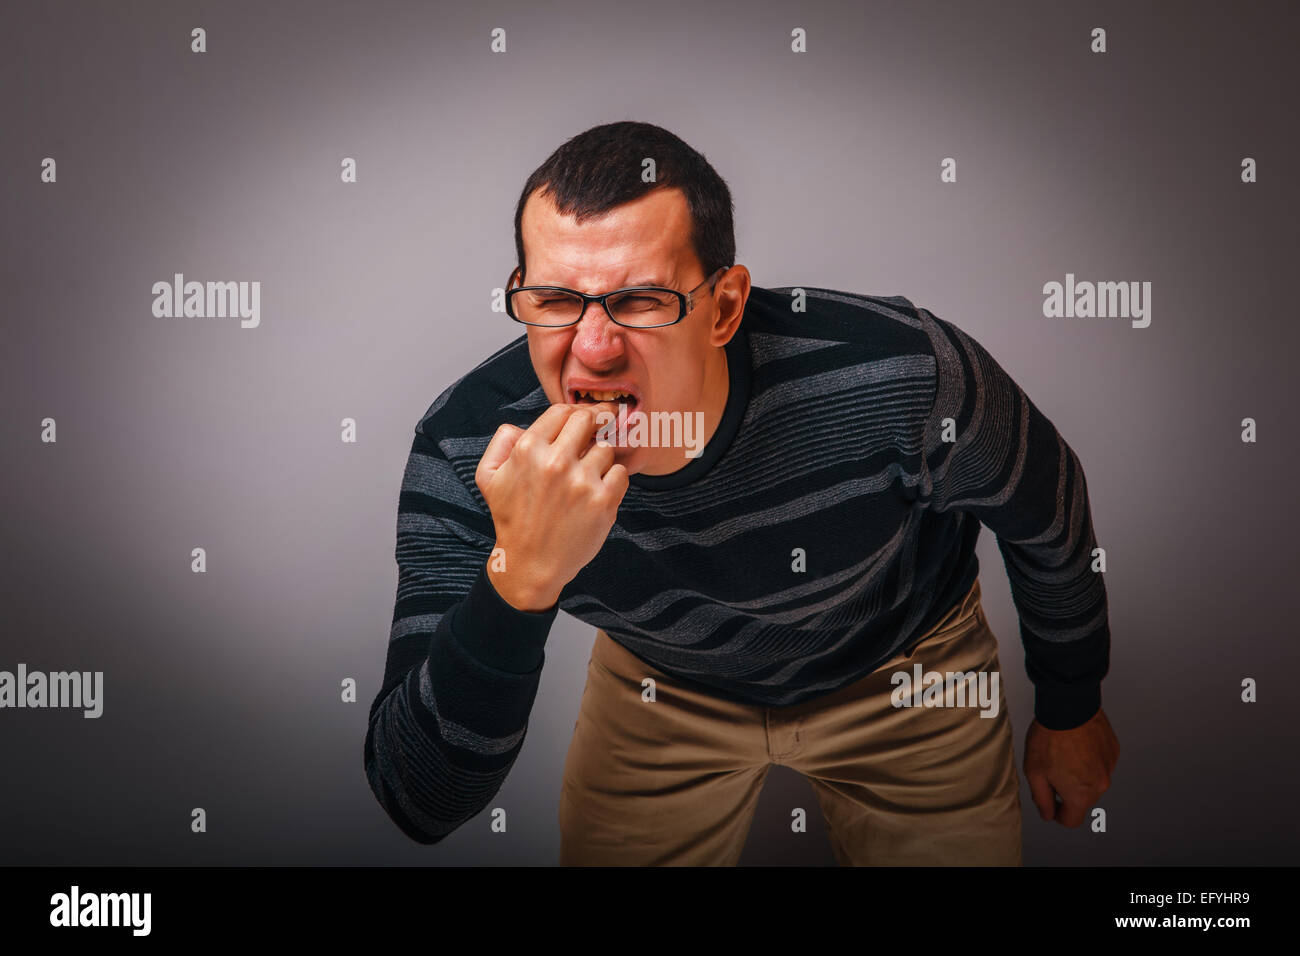 Homme d'apparence brunet mettre ses doigts dans sa bouche Banque D'Images